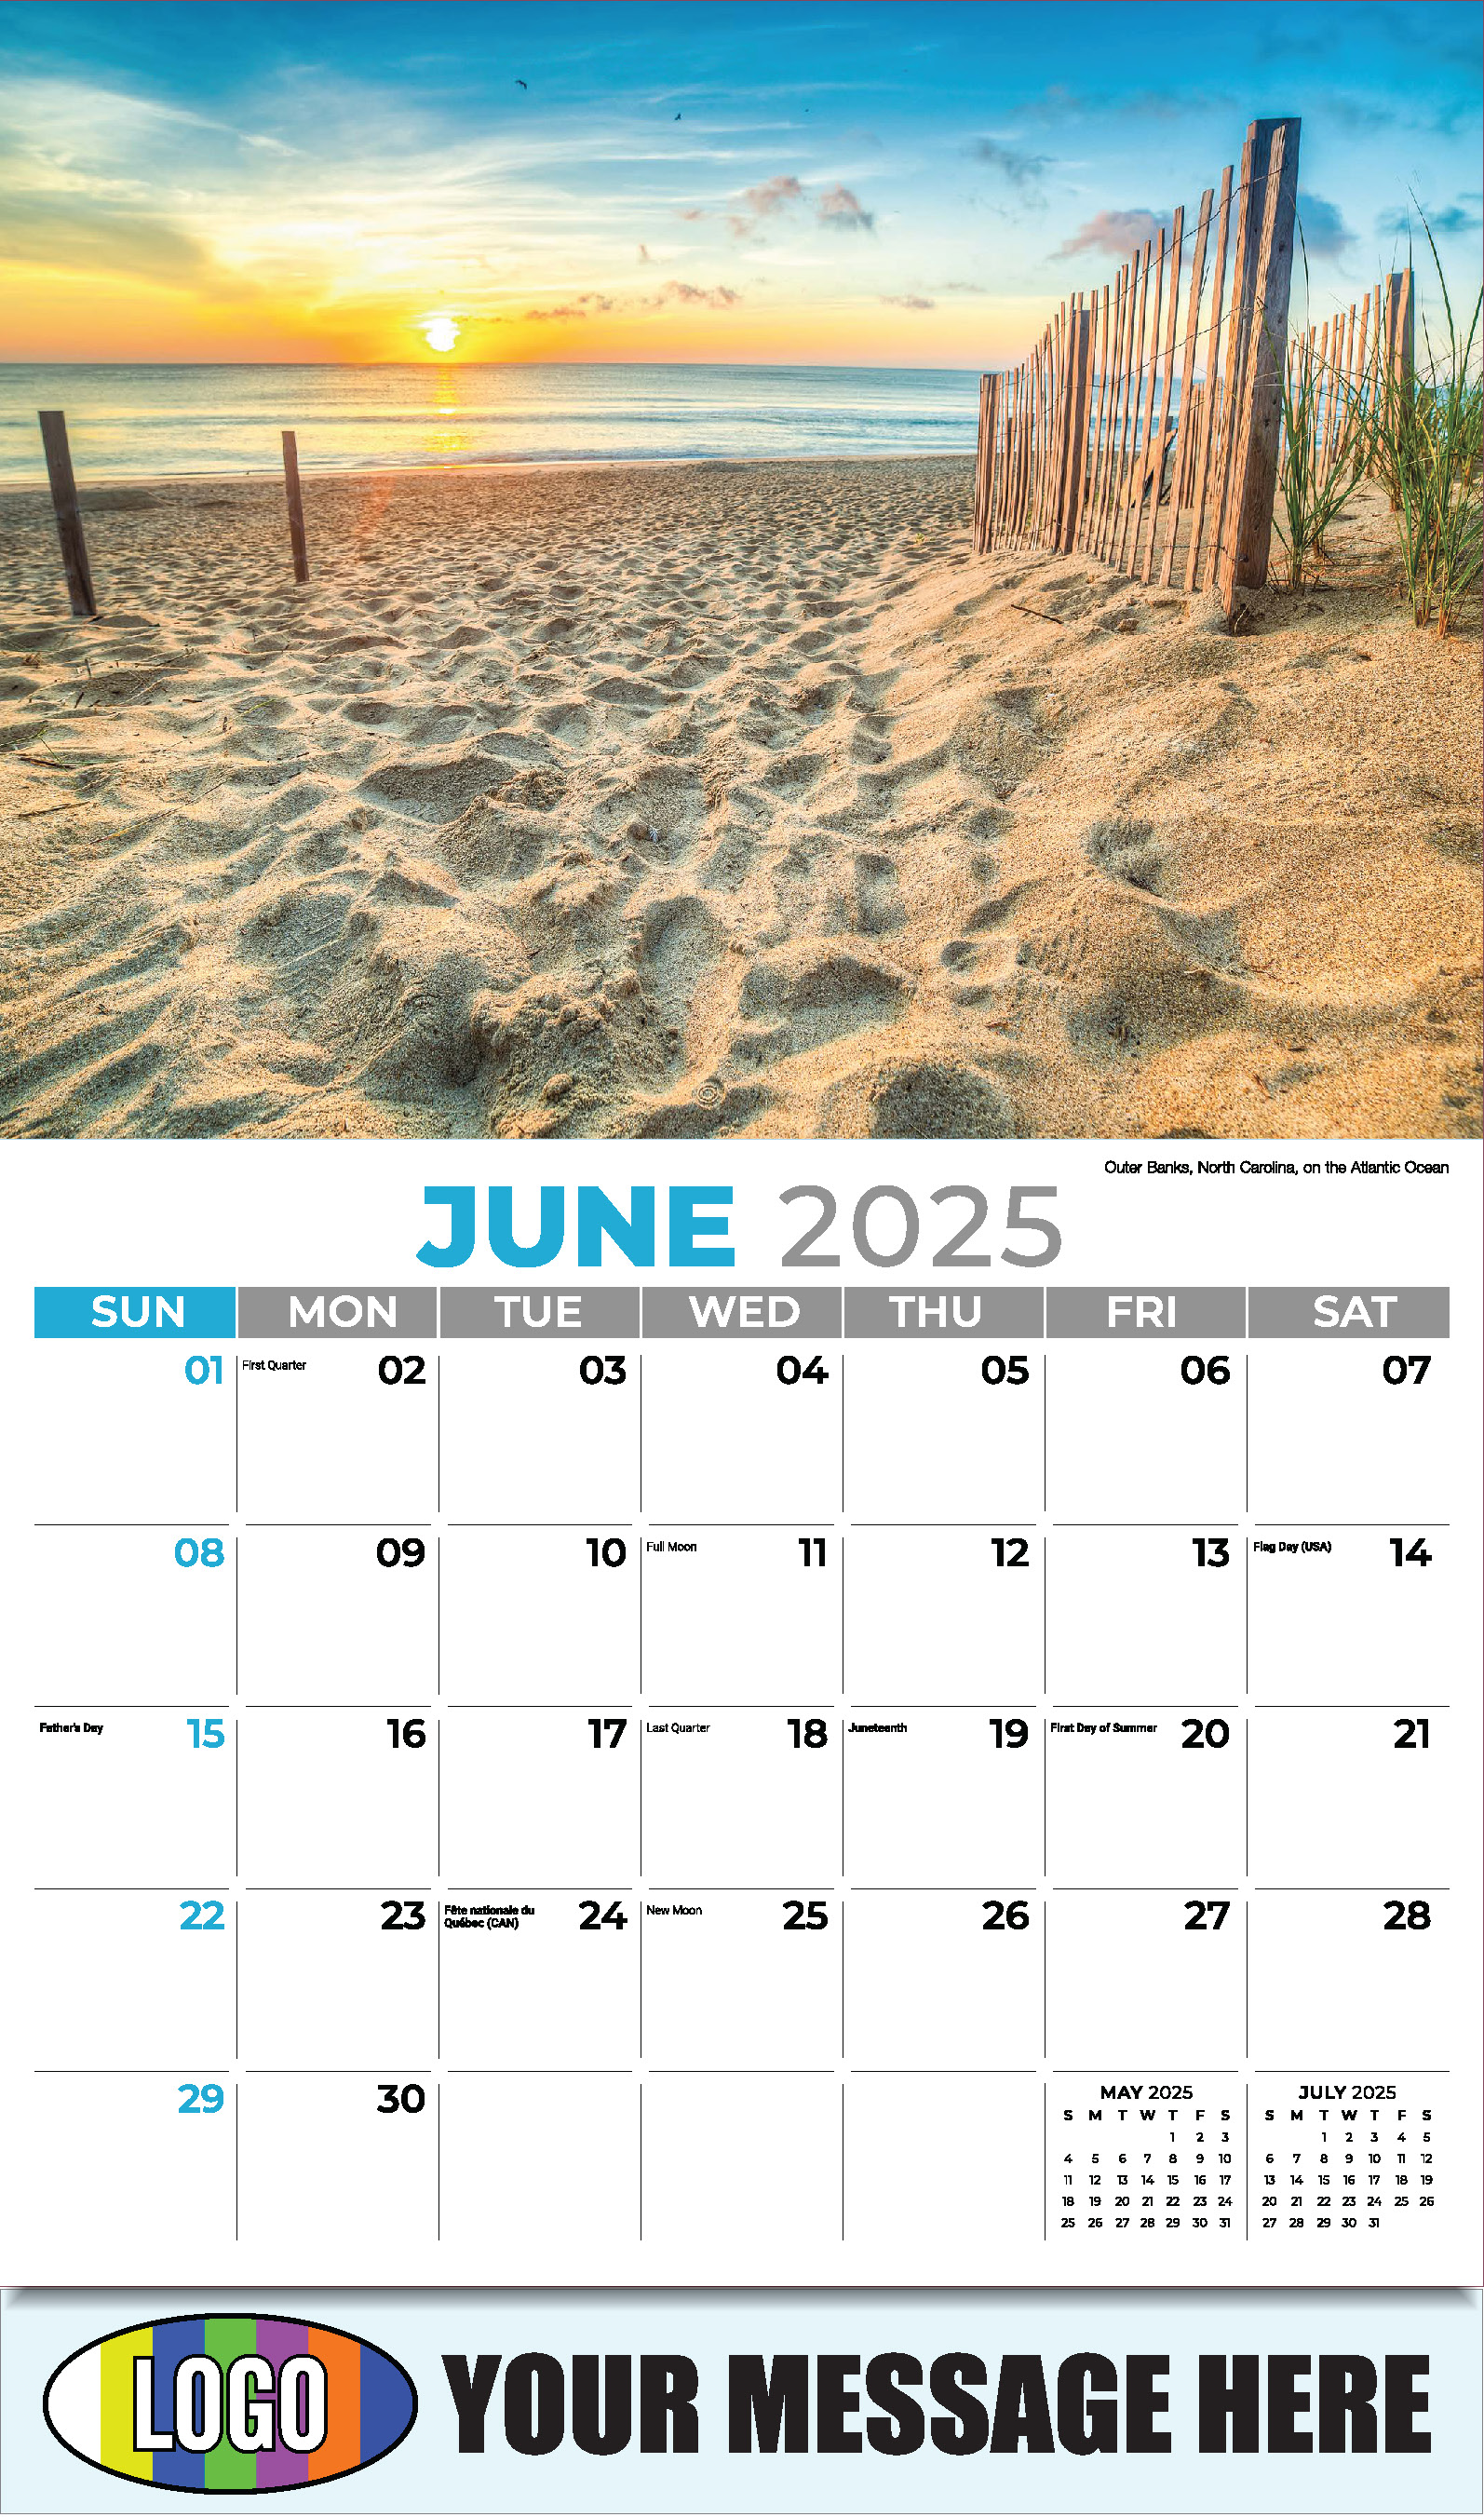 Sun, Sand and Surf 2025 Business Advertsing Wall Calendar - June